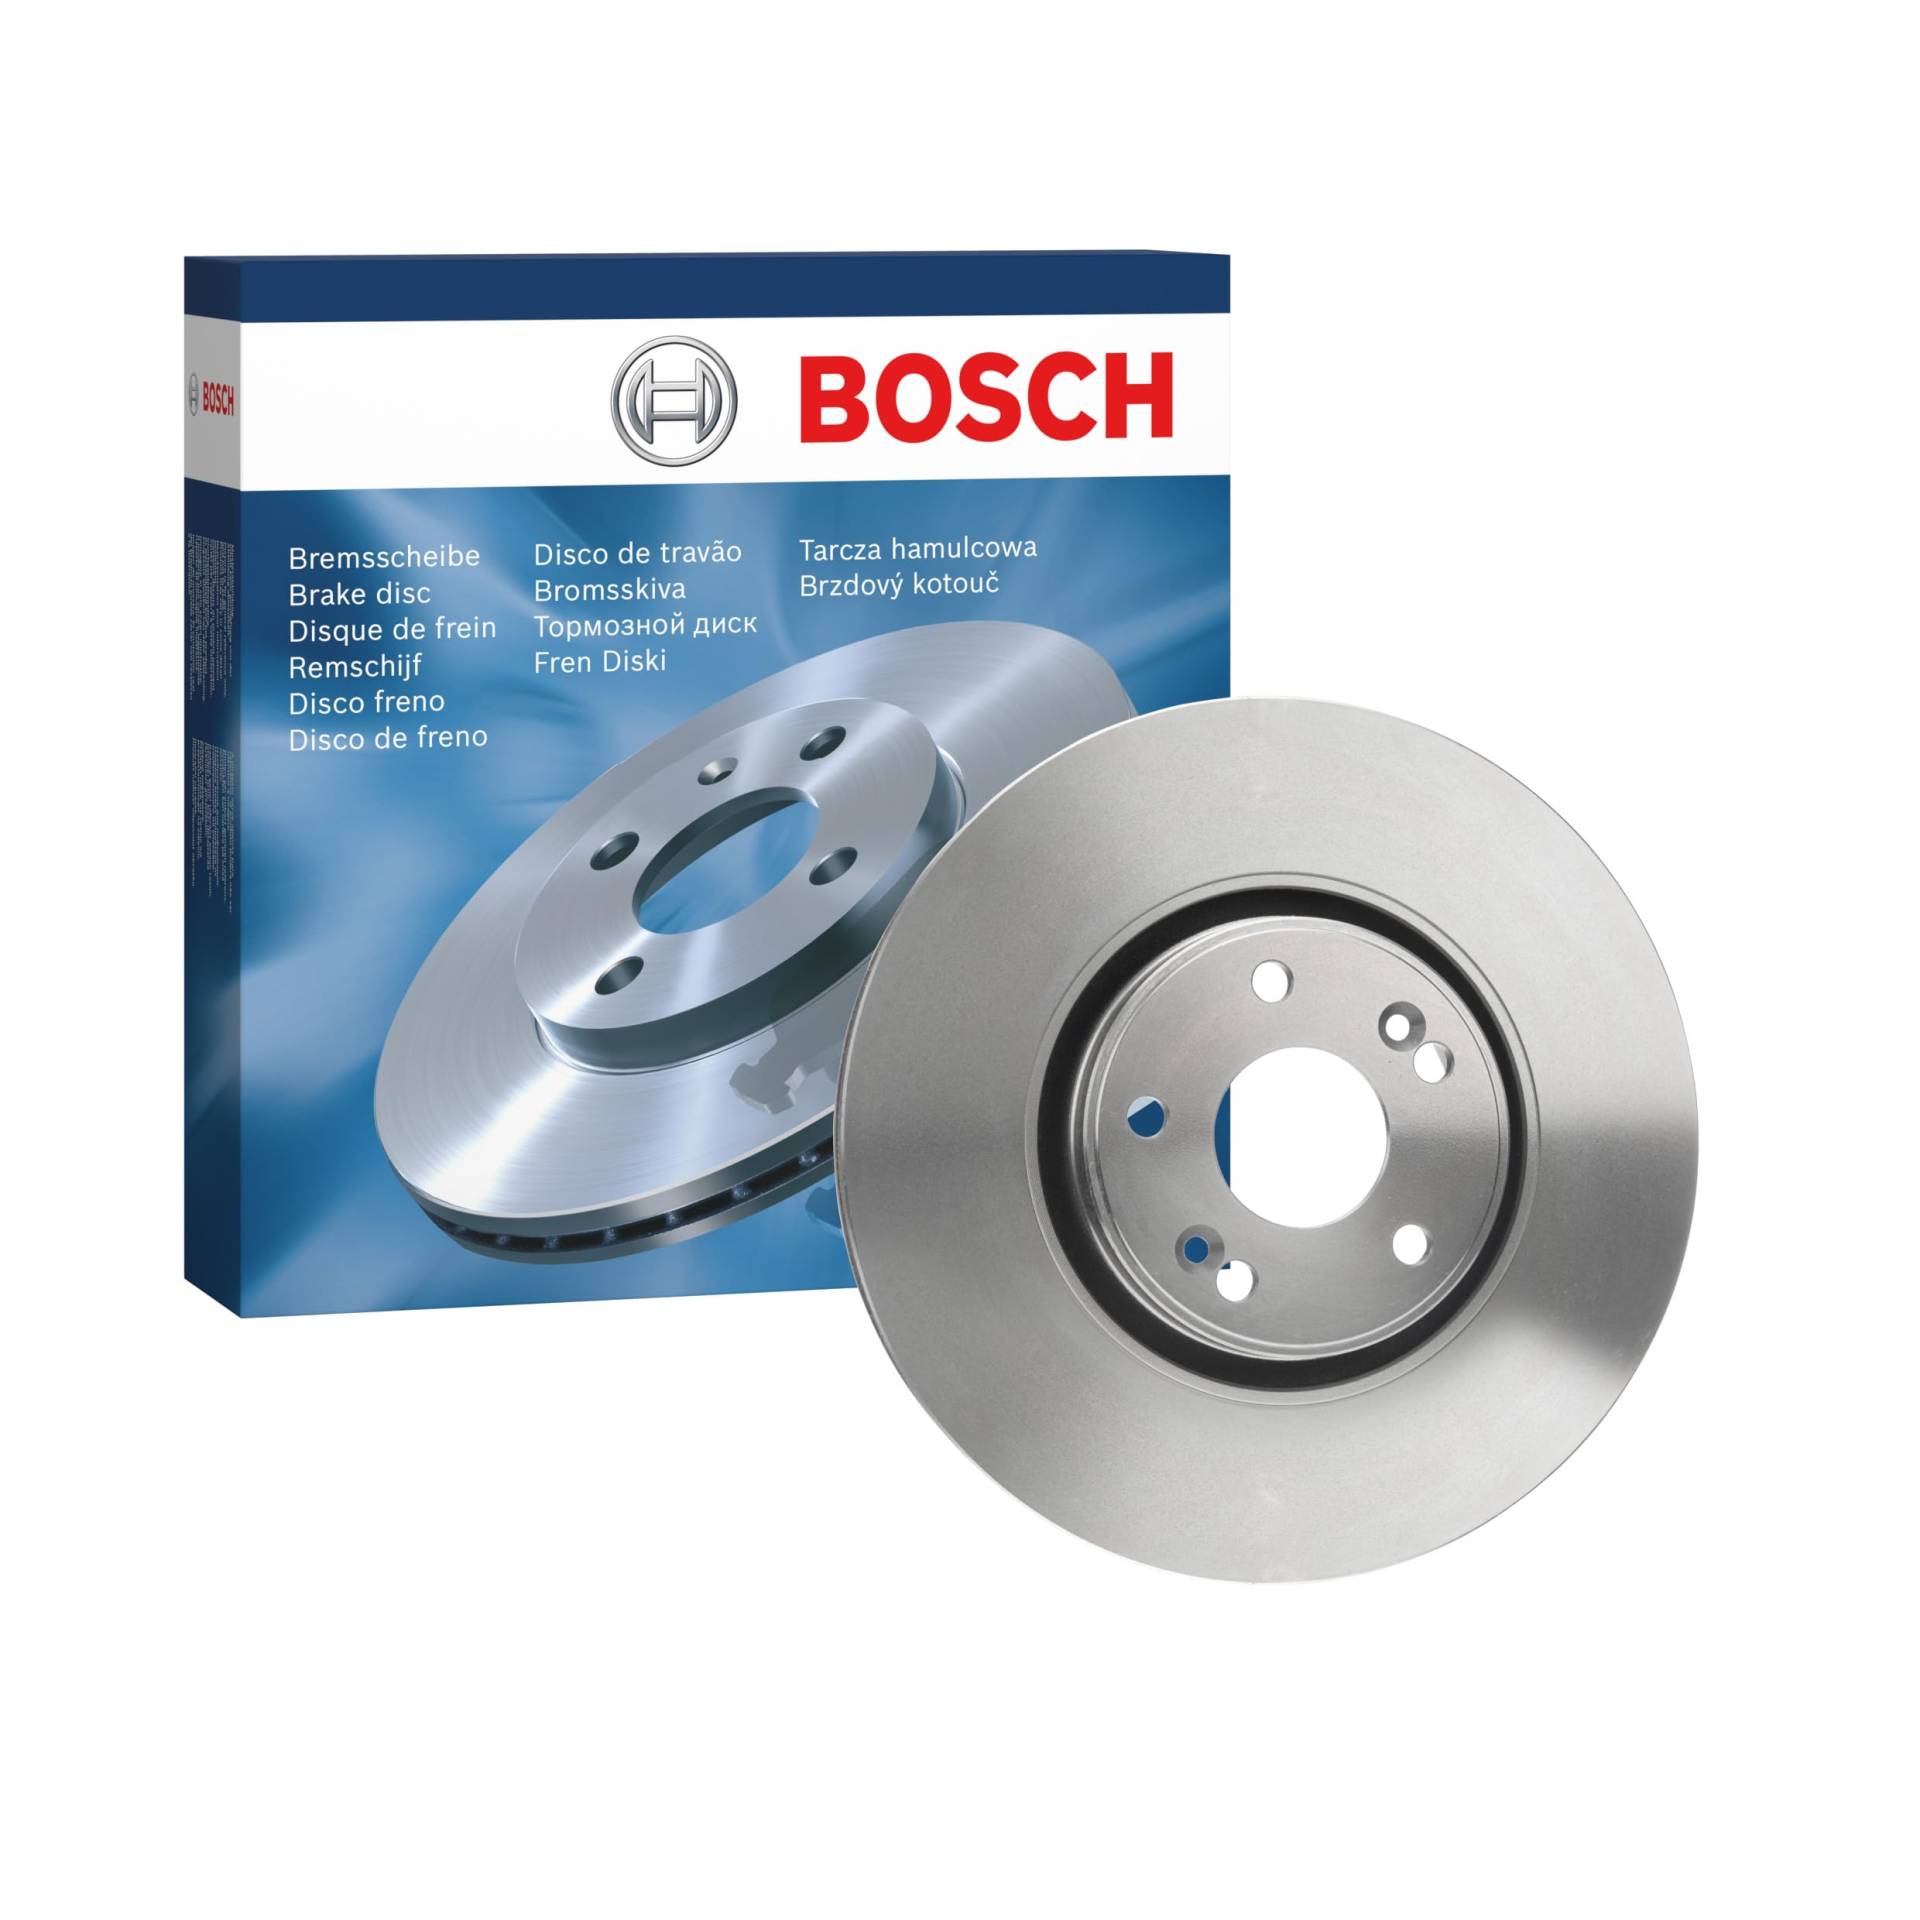 Bosch BD1067 Bremsscheiben - Vorderachse - ECE-R90 Zertifizierung - eine Bremsscheibe von Bosch Automotive